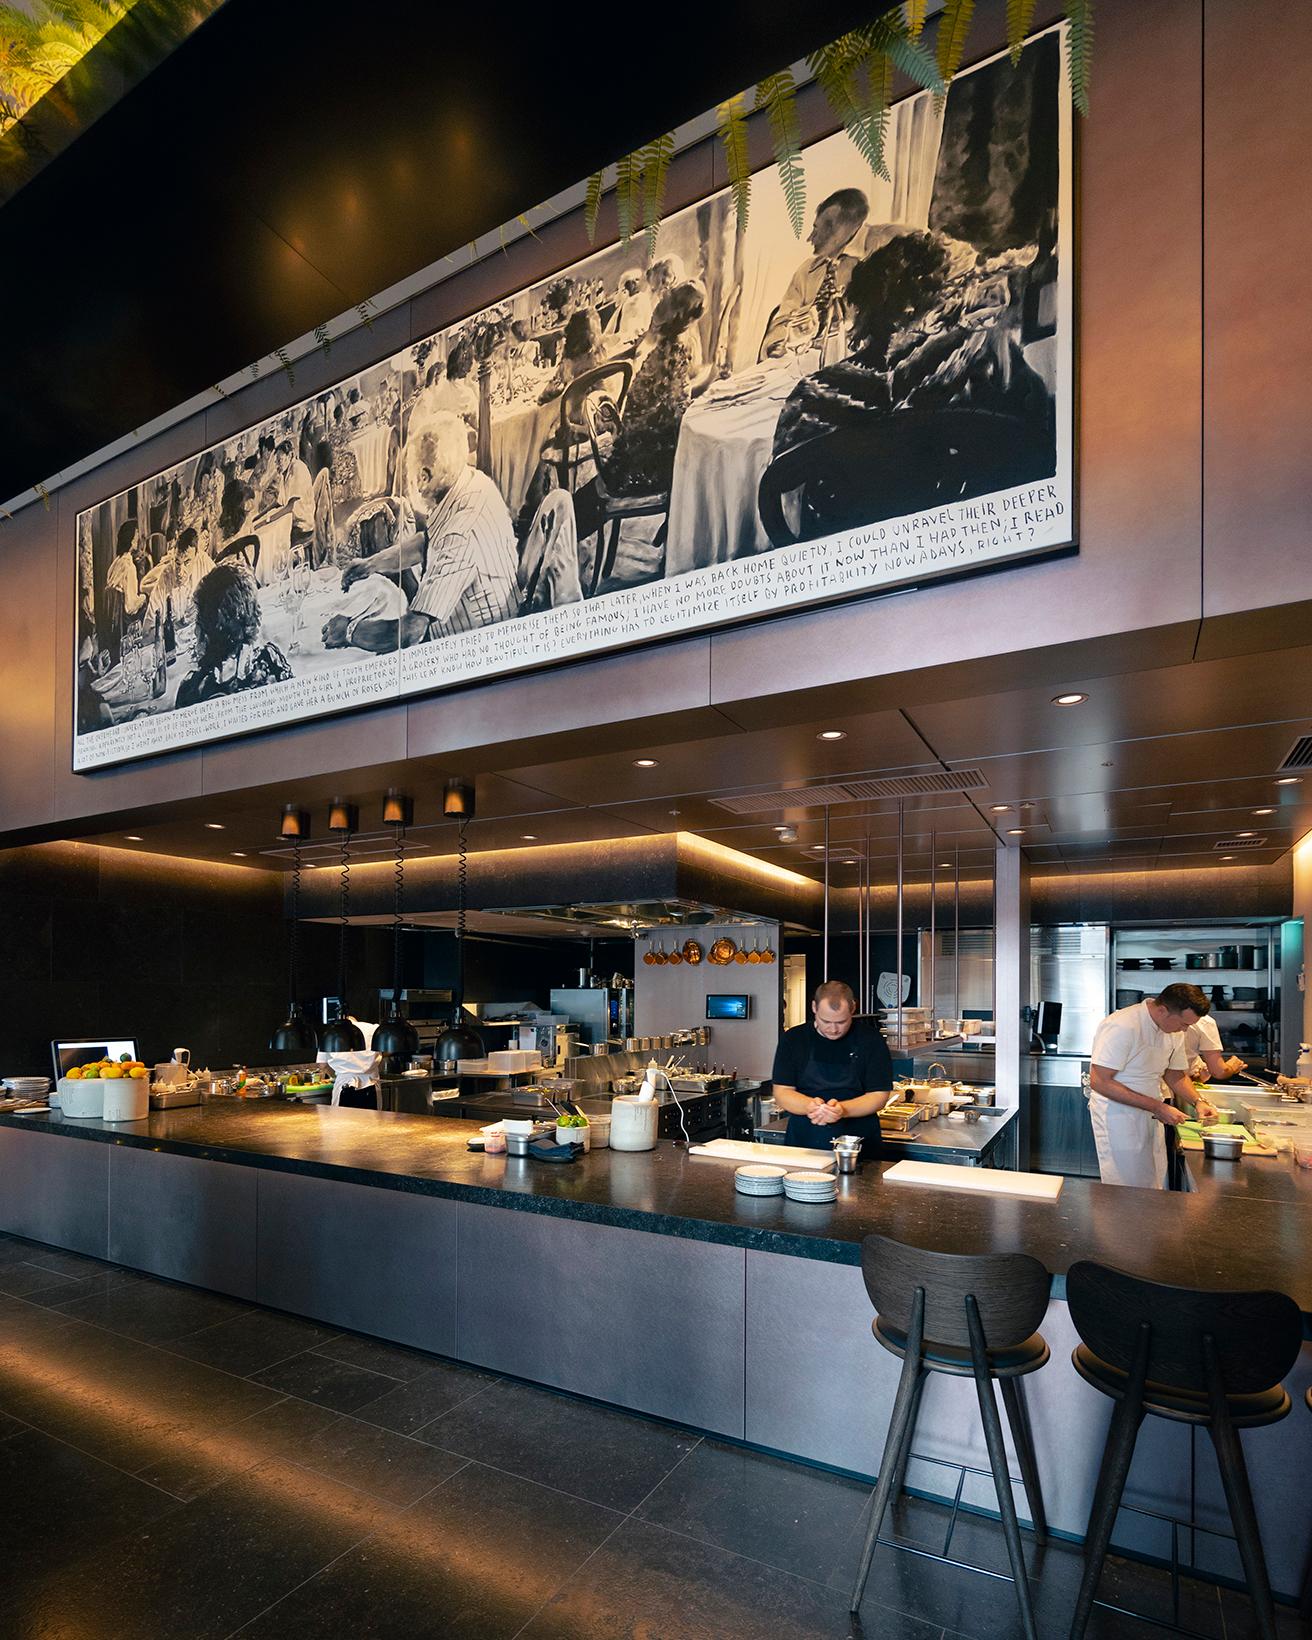 広々としたオープンキッチンのカウンターの上には、ハーマンシェフが一番のお気に入りだというアートが飾られている。人々がレストランで幸せな時間を過ごしているシーンを描いたこの絵は、ハーマンシェフが求める理想のレストランを象徴している。